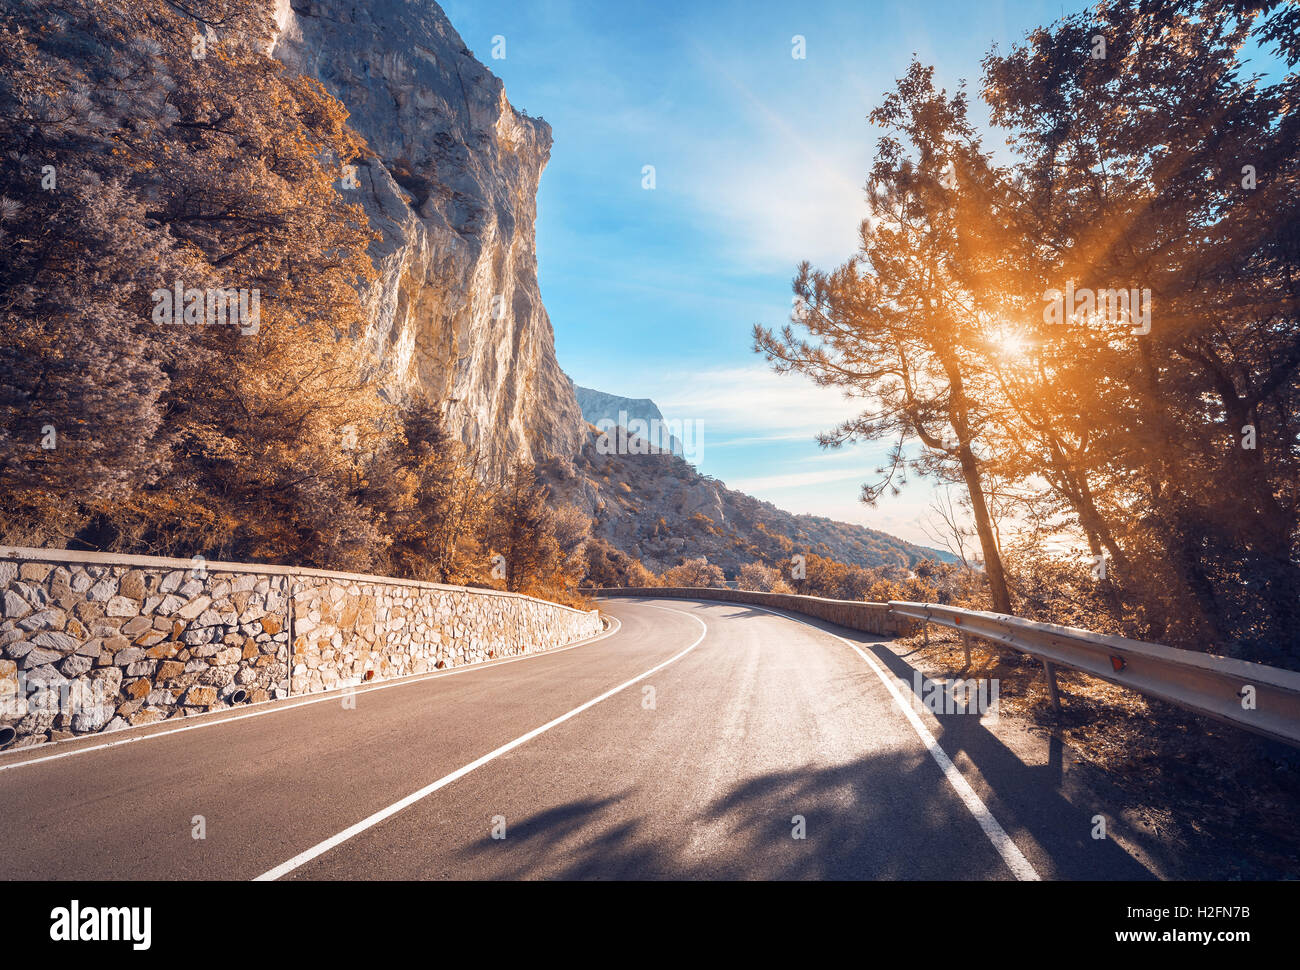 Asphaltierte Straße. Bunte Landschaft mit schönen Bergstraße mit perfekter Asphalt. Hohe Felsen, blaue Himmel bei Sonnenaufgang im Sommer. Stockfoto